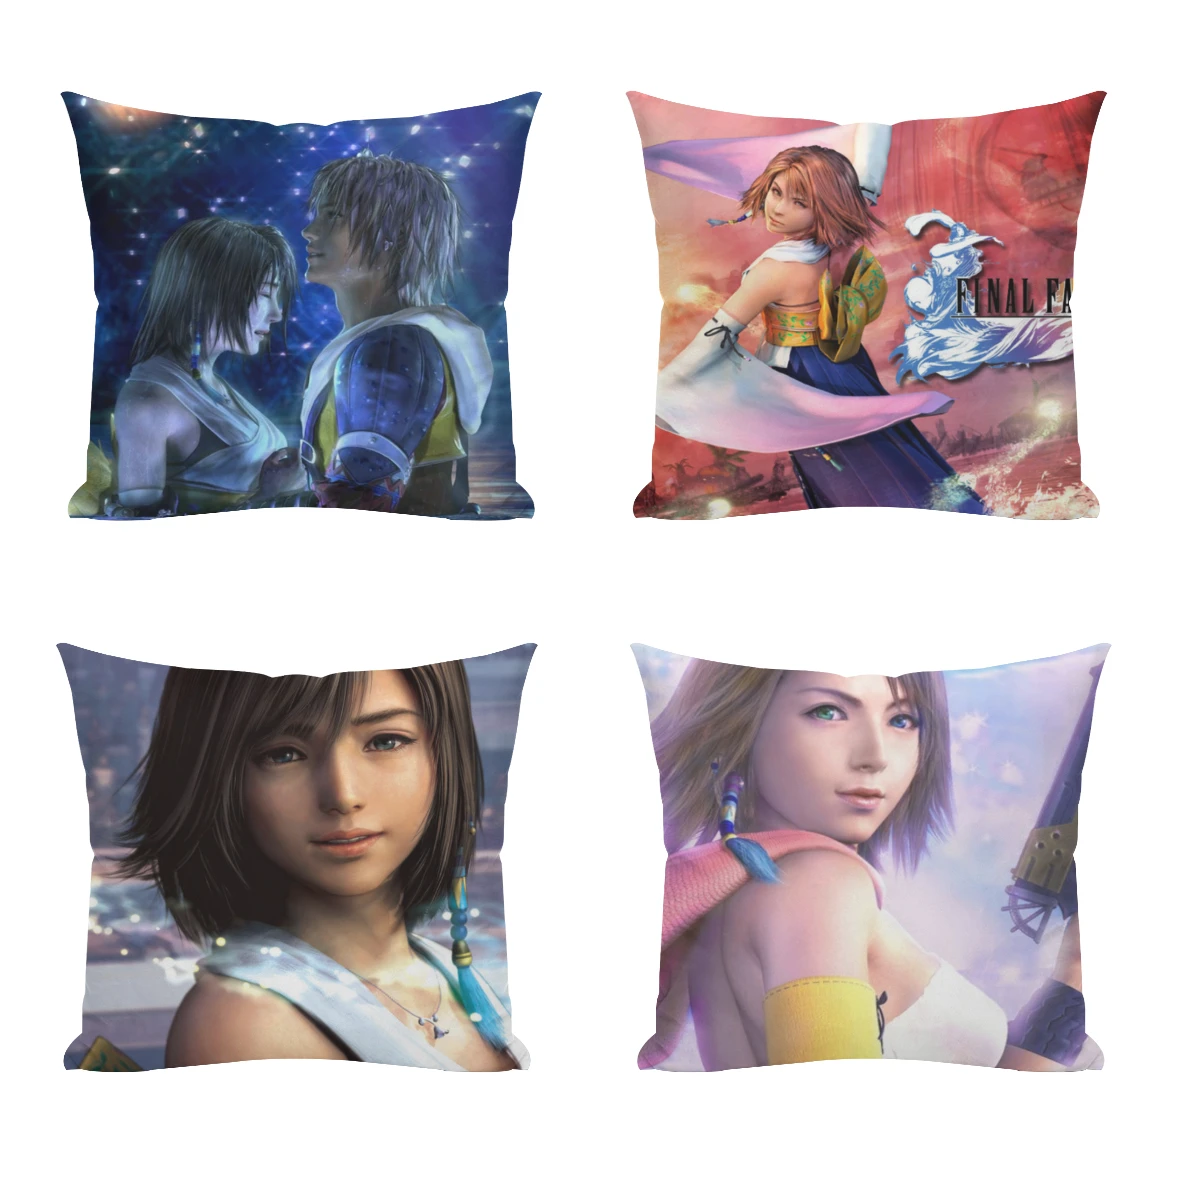 

F-Final-Fantasy-X Pillowcase Cushions Cover Cushions Home Decoration Pillows For Sofa